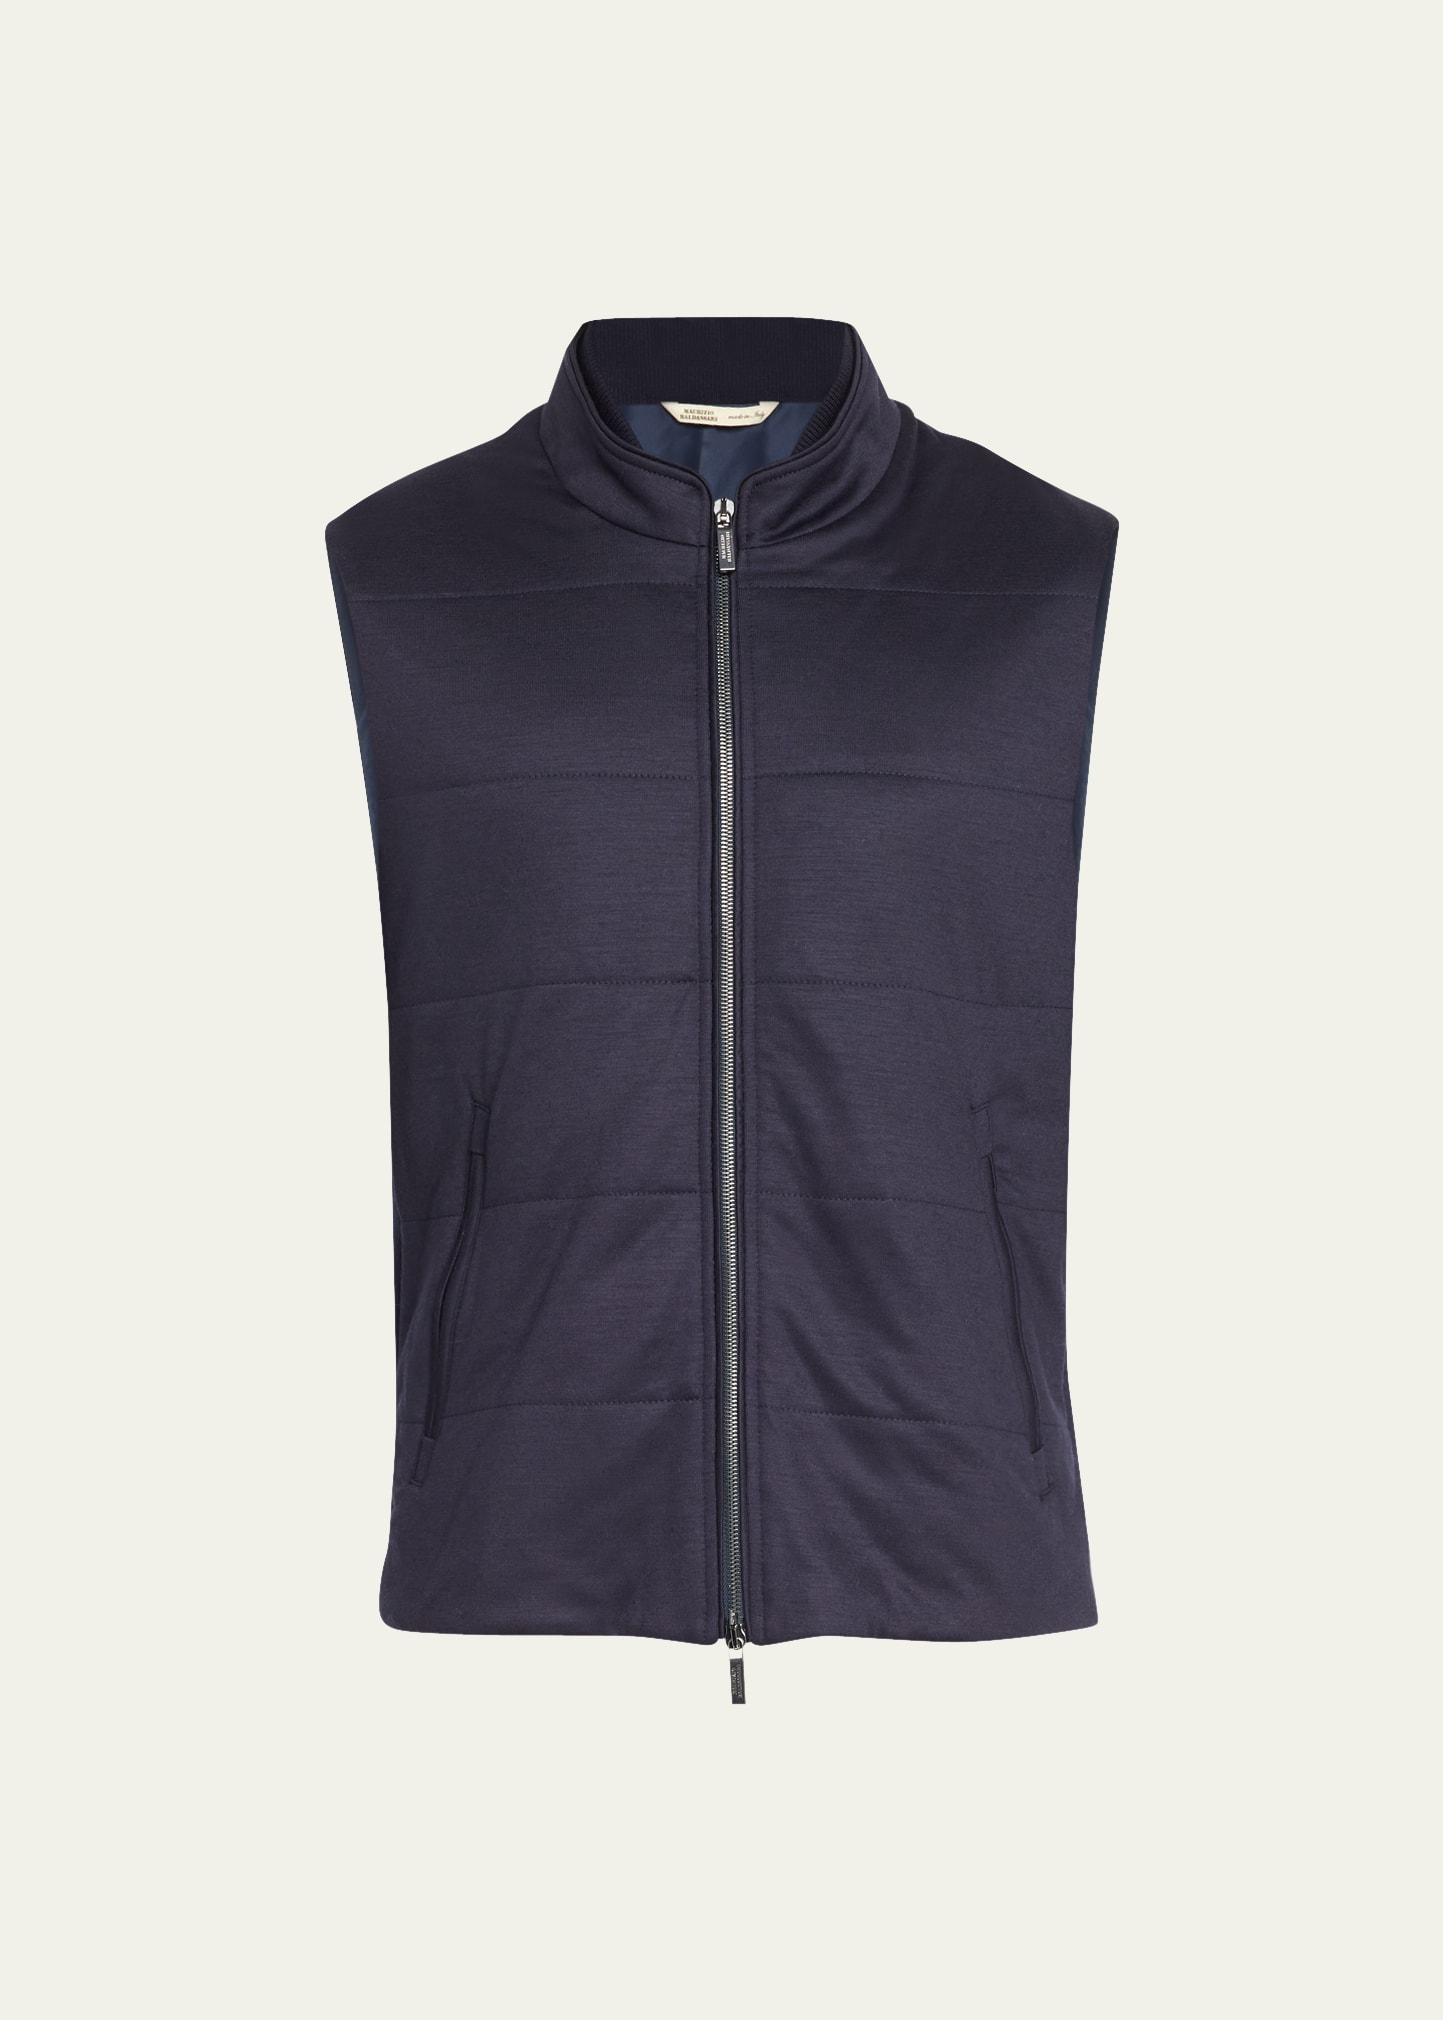 Baldassari Men's Jersey Comfort Ful-Zip Vest